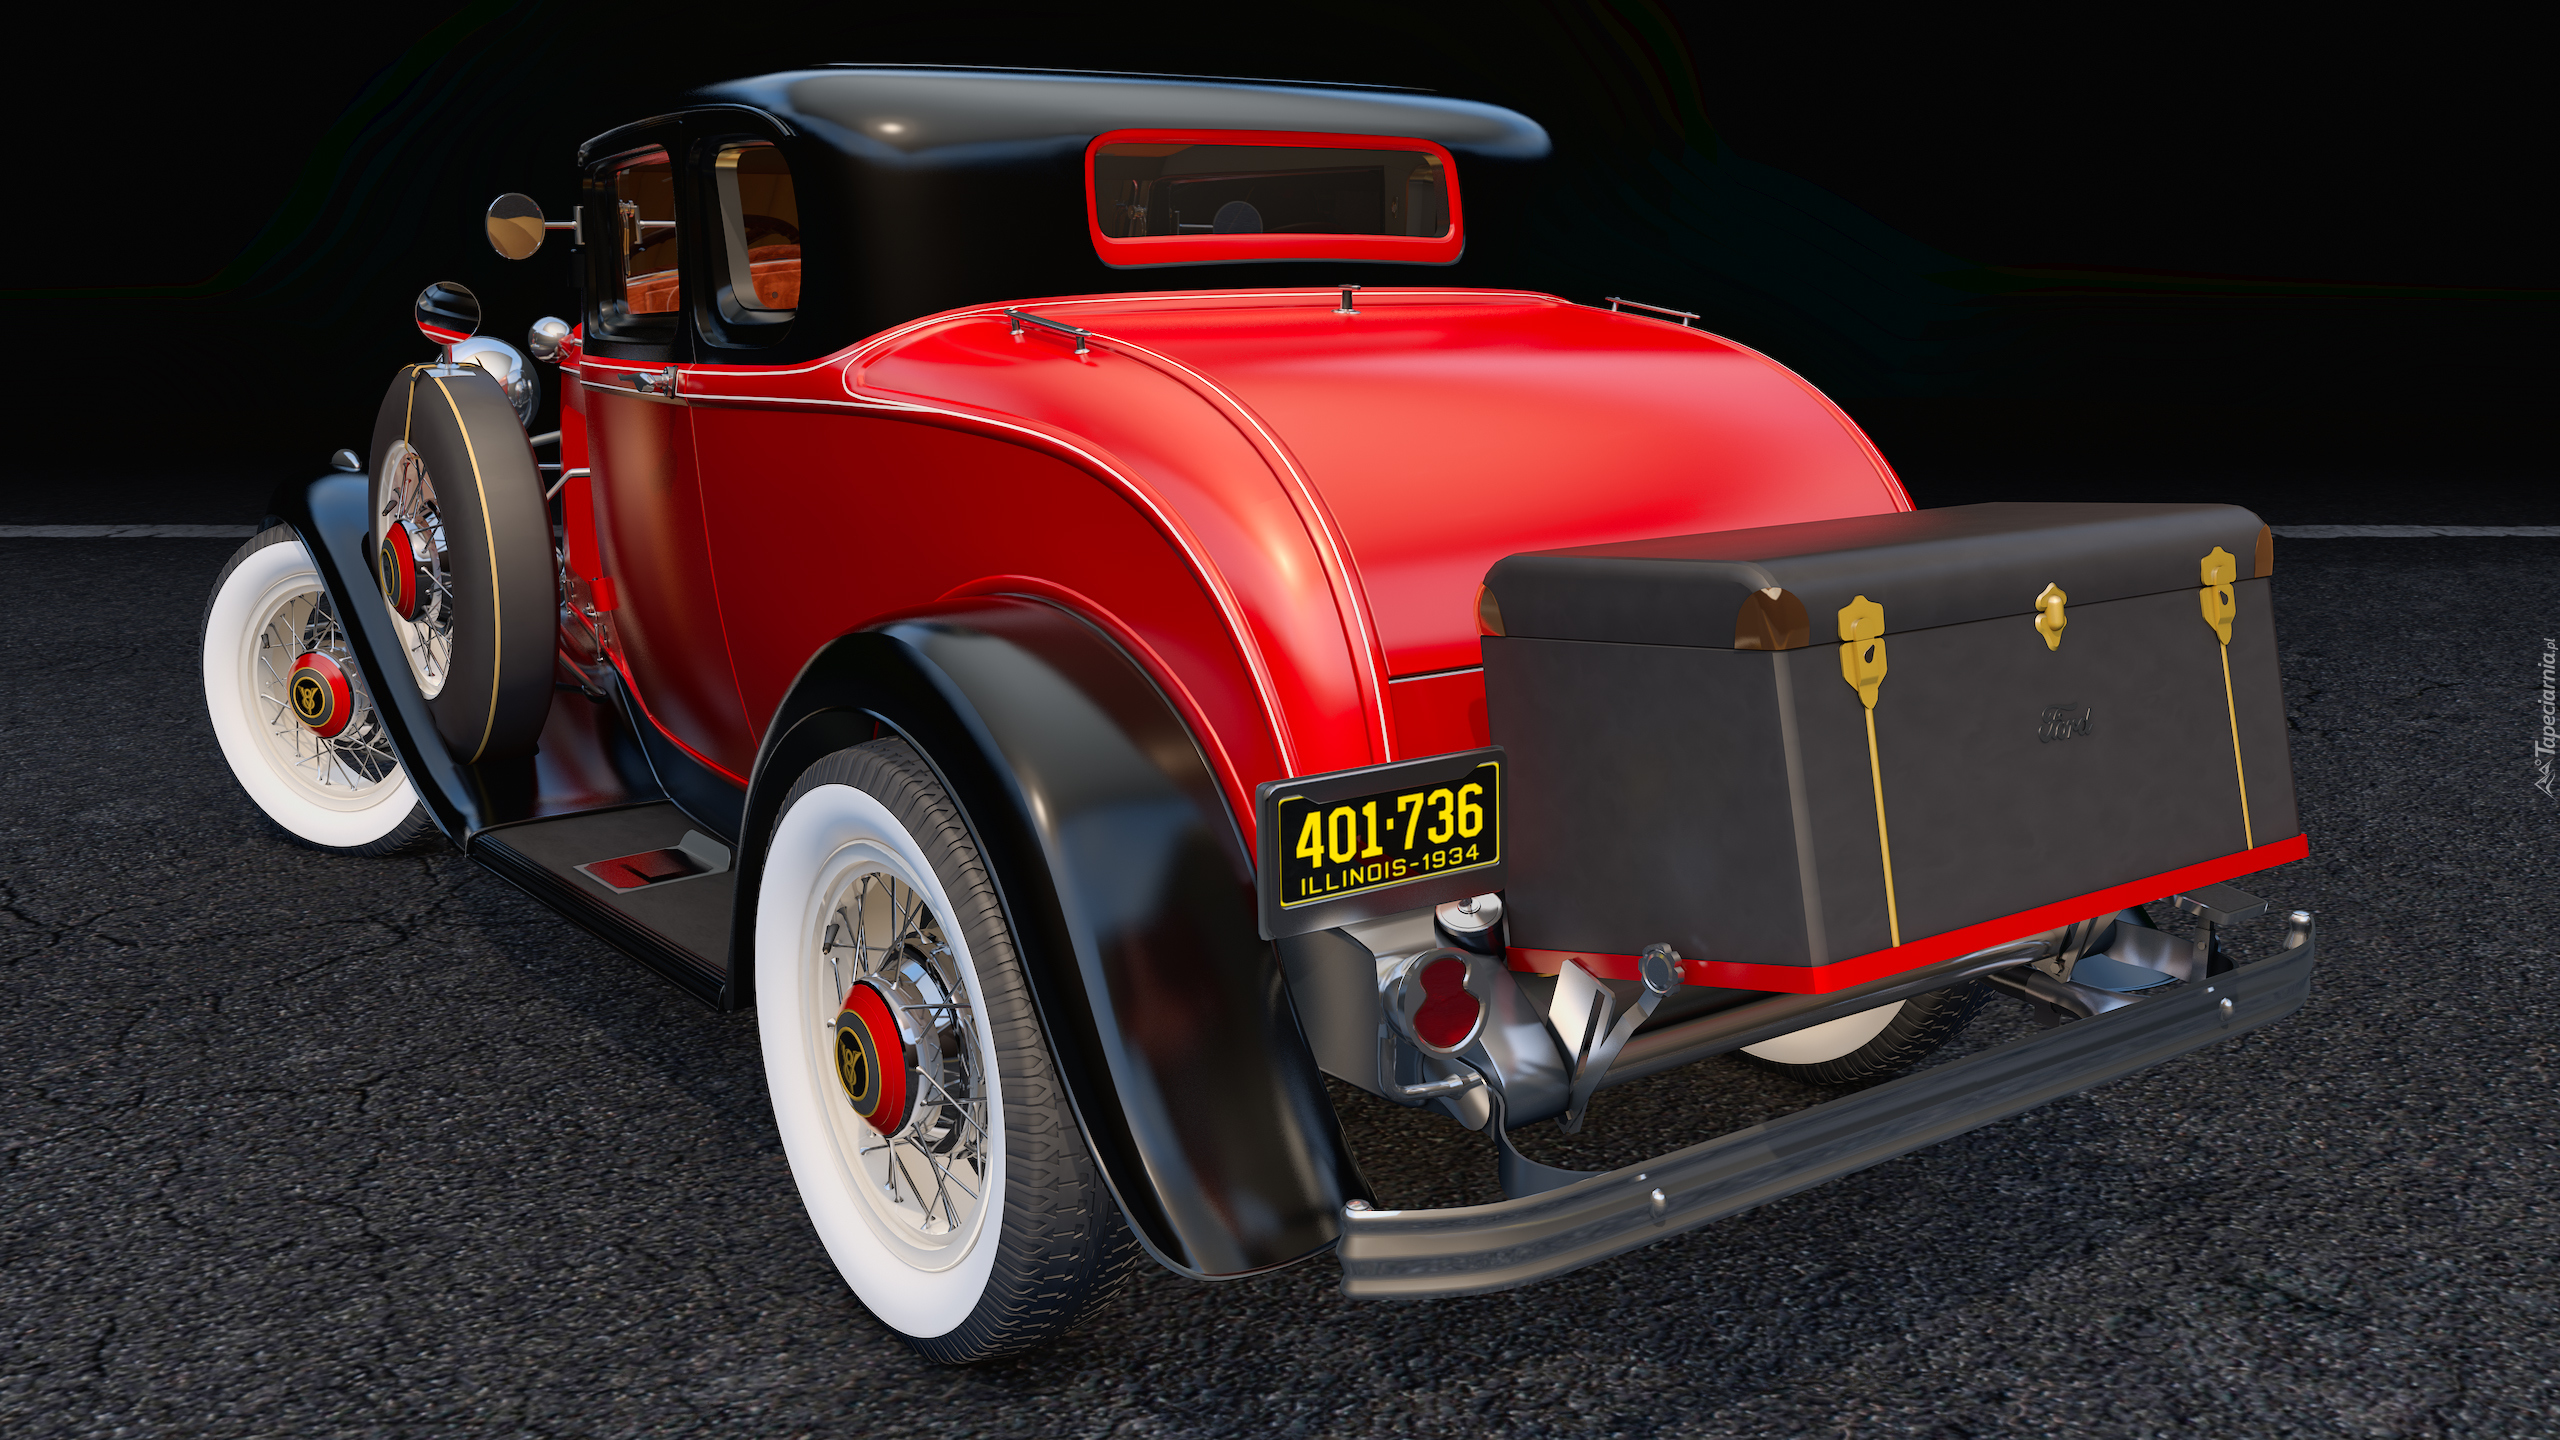 Czerwony, Zabytkowy, Ford Coupe Deluxe, 1932